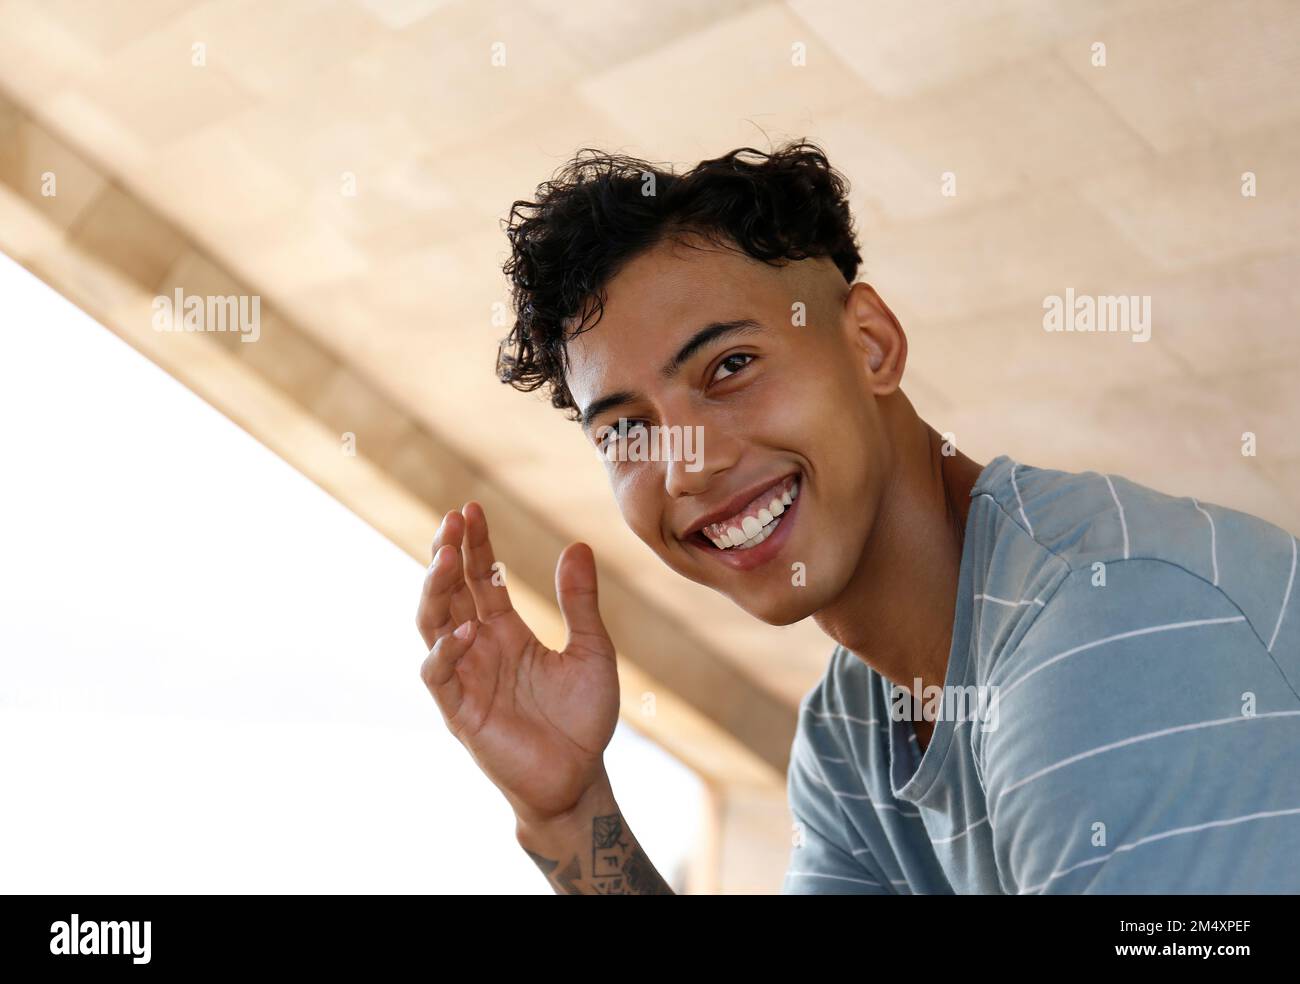 Glücklicher junger Mann mit unordentlichem Haar Stockfoto